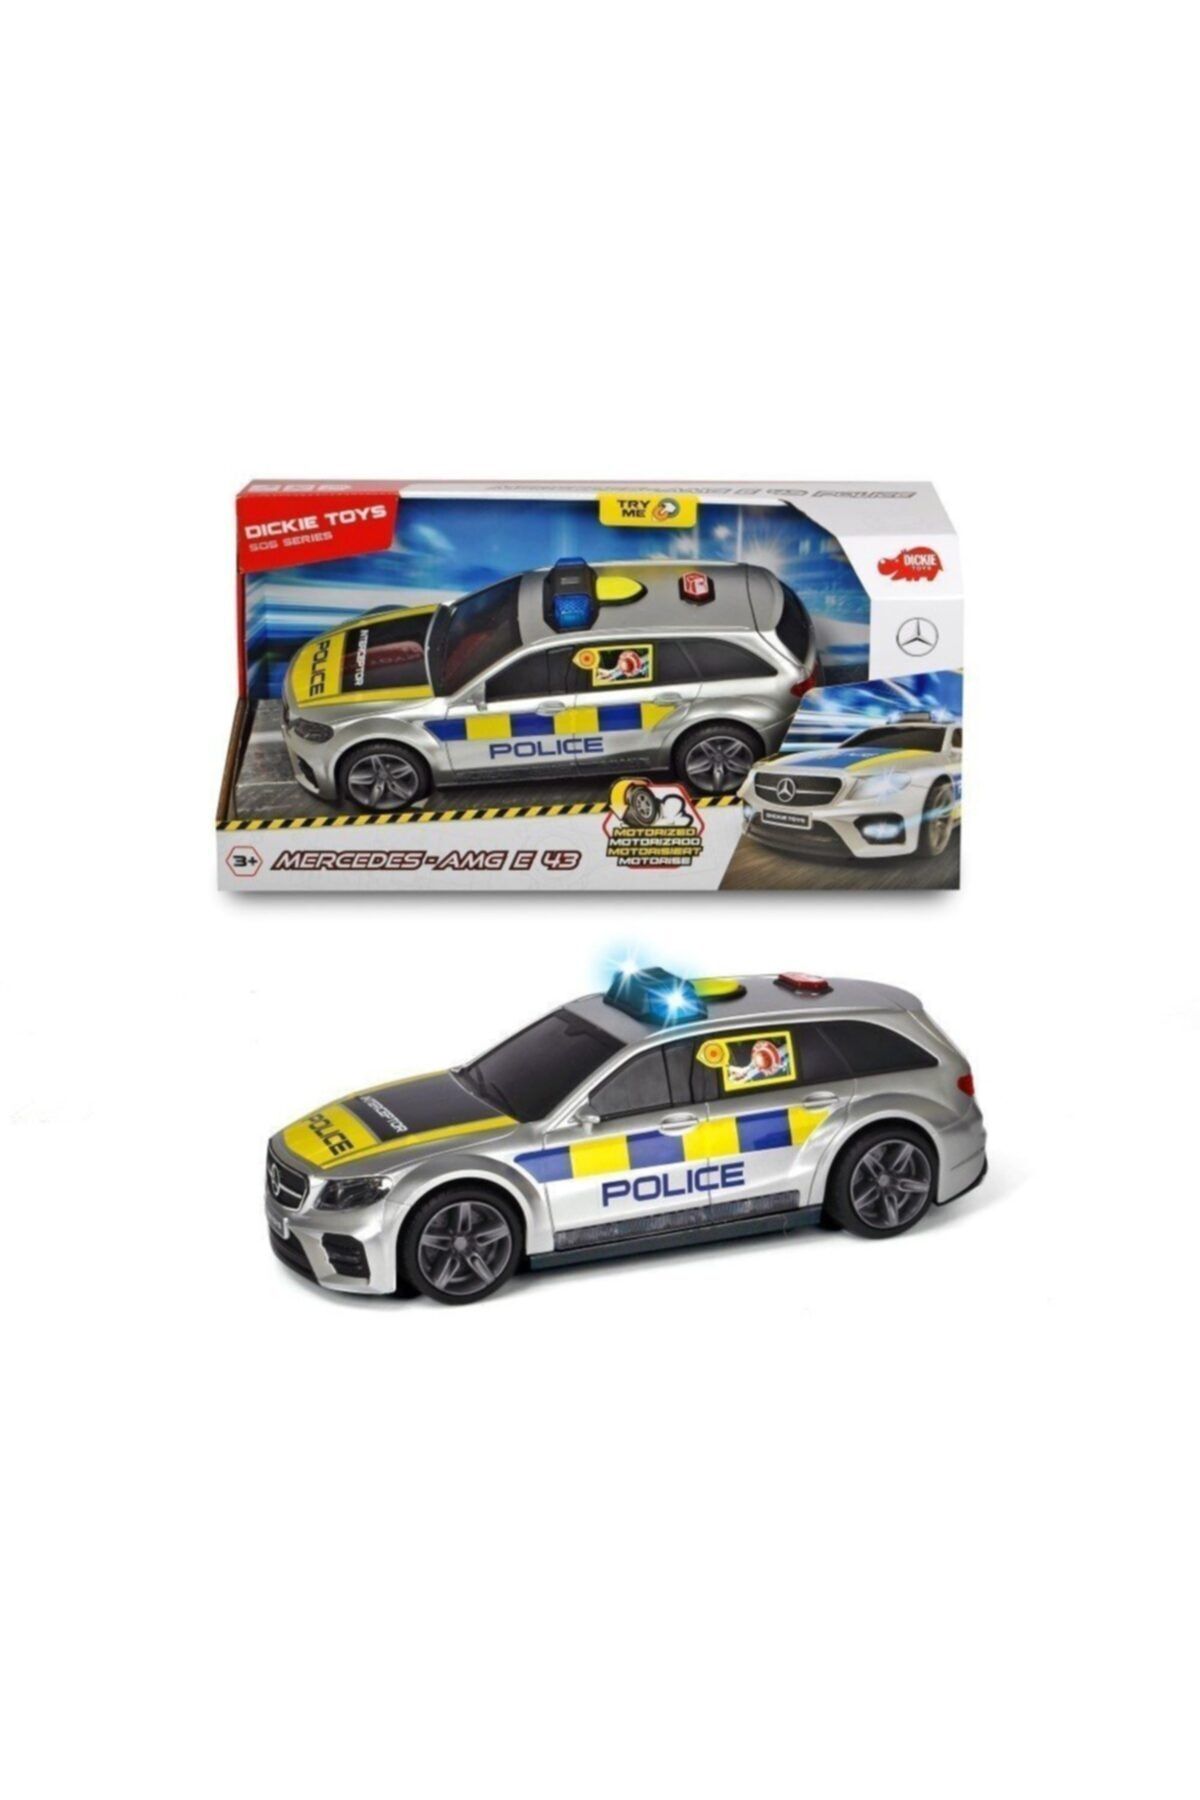 Genel Markalar Bisepetim Dickie Toys Işıklı Ve Sesli Mercedes Amg Polis Arabası 3716018